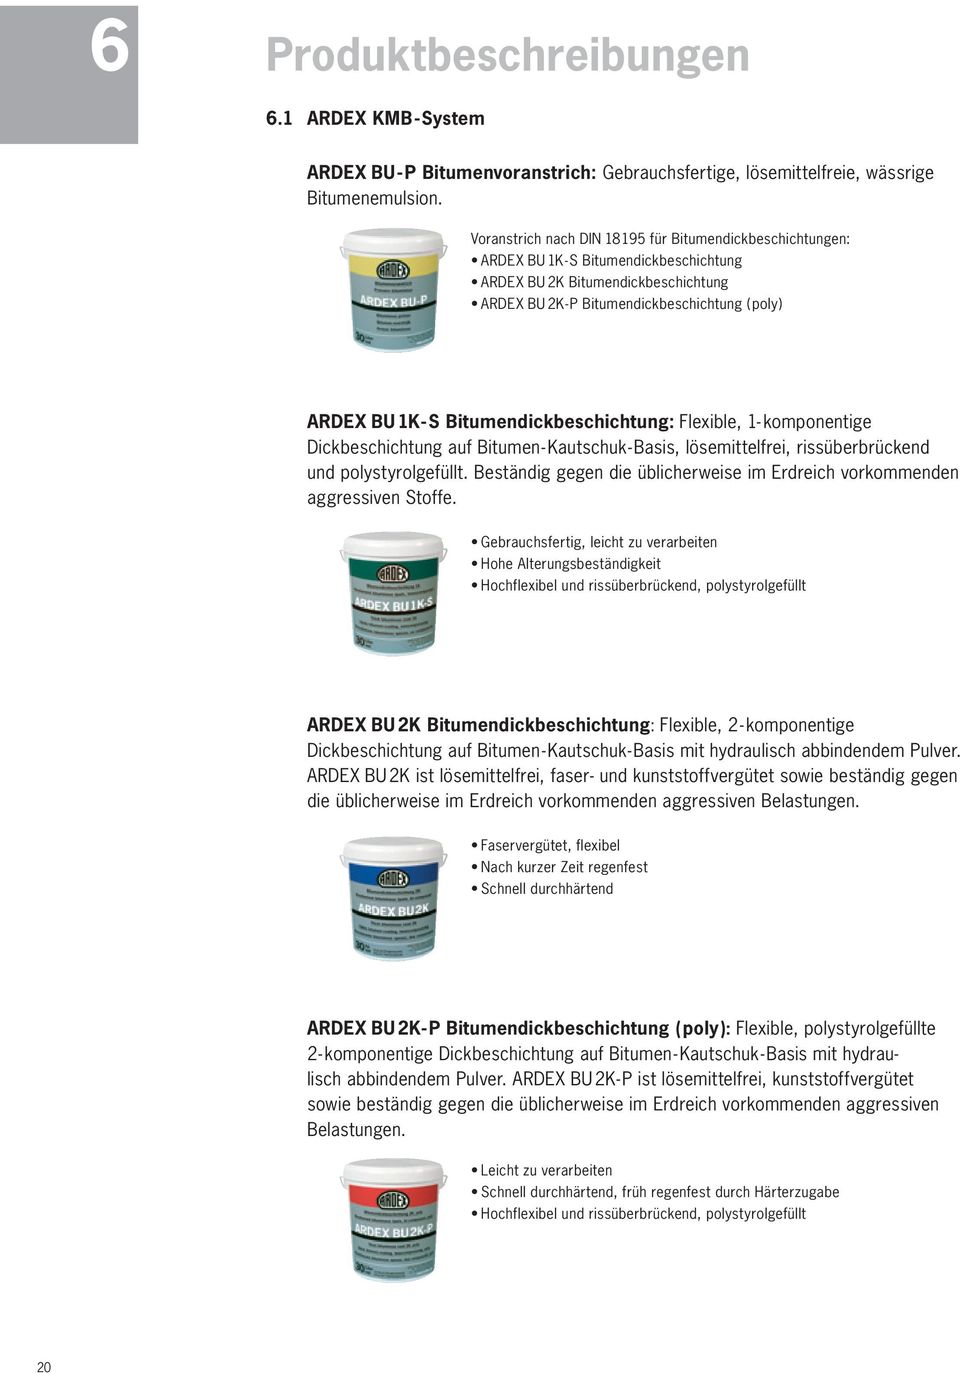 Bitumendickbeschichtung: Flexible, - komponentige Dickbeschichtung auf Bitumen-Kautschuk-Basis, lösemittelfrei, rissüberbrückend und polystyrolgefüllt.